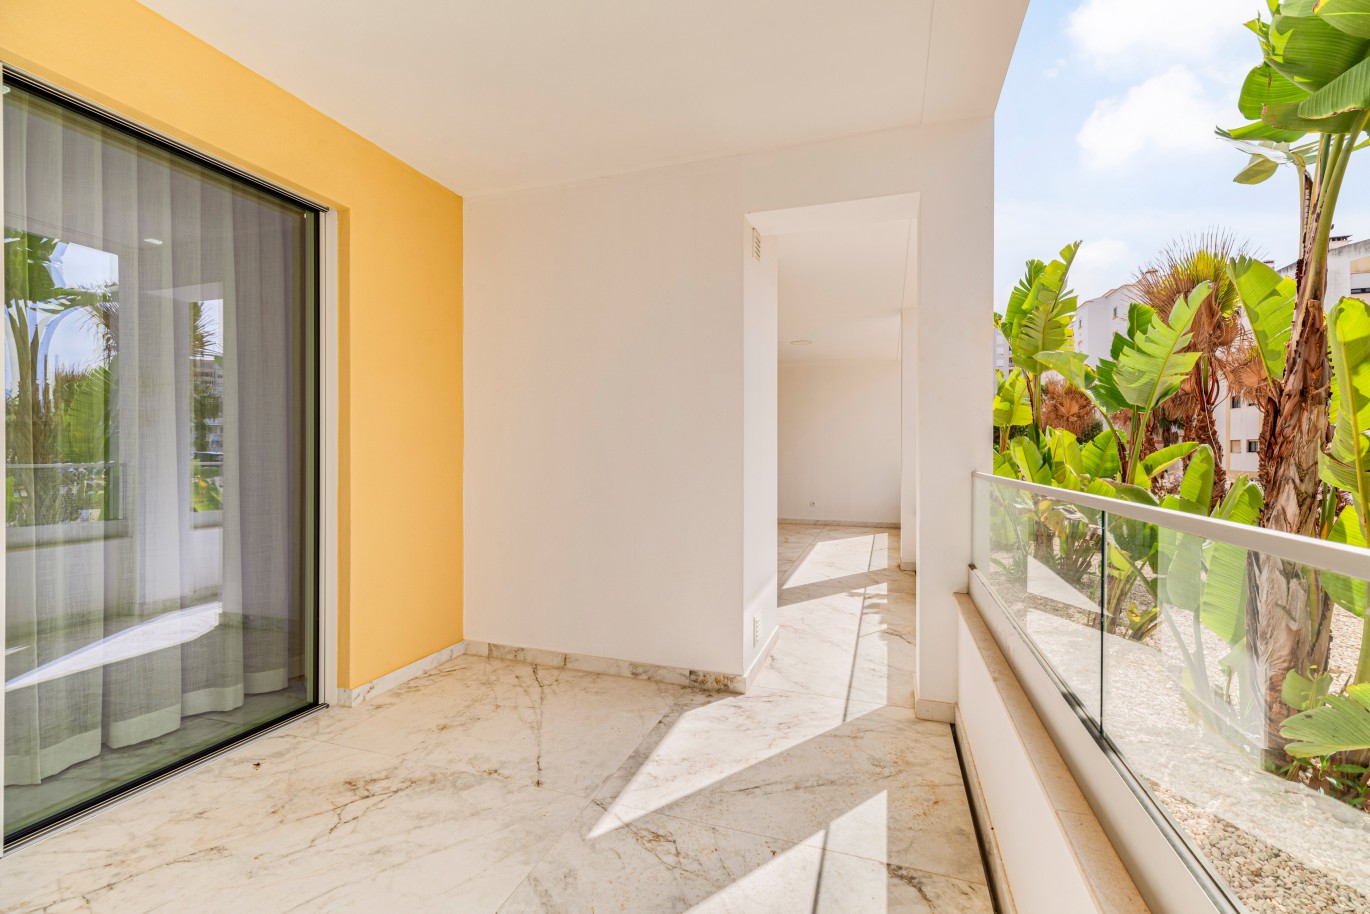 Verkauf einer Wohnung im Bau, mit Terrasse, Lagos, Algarve, Portugal_238453